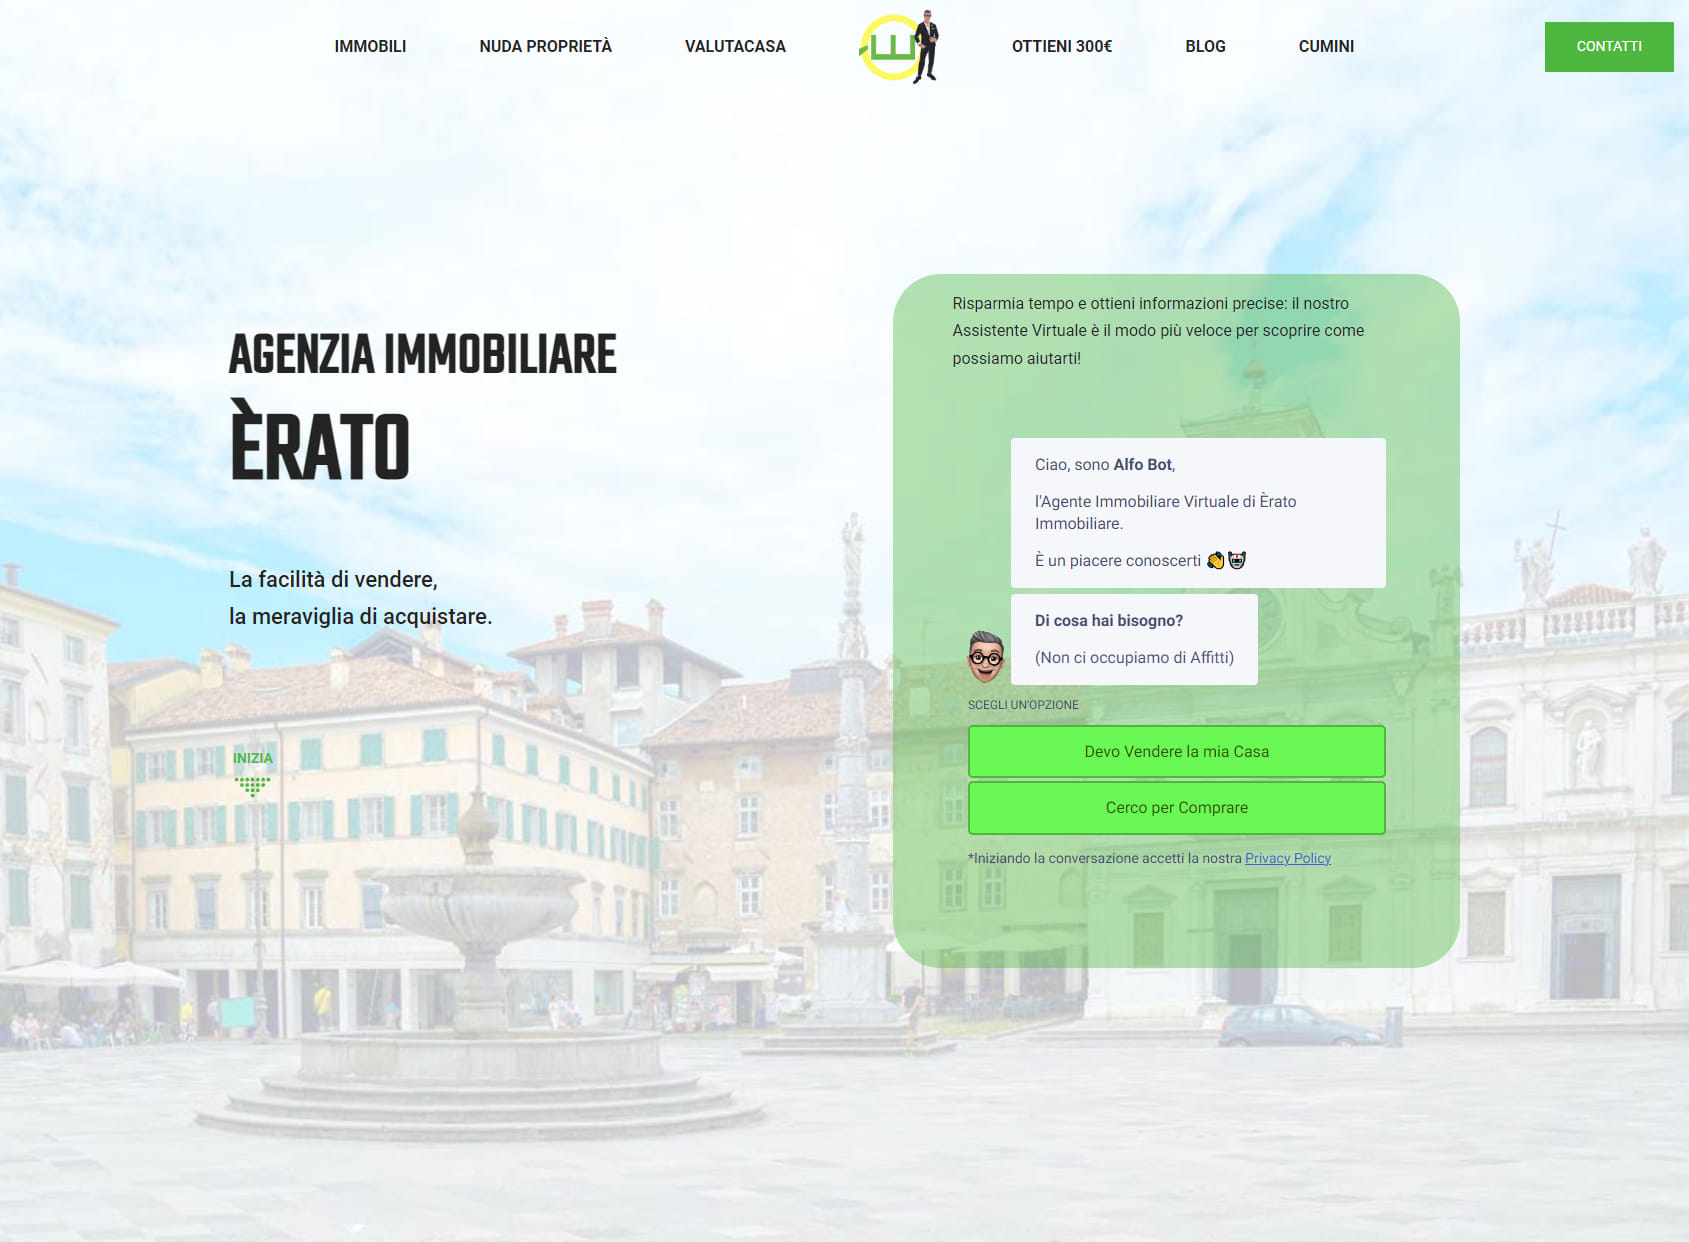 ÈRATO Agenzia Immobiliare - Sede Udine